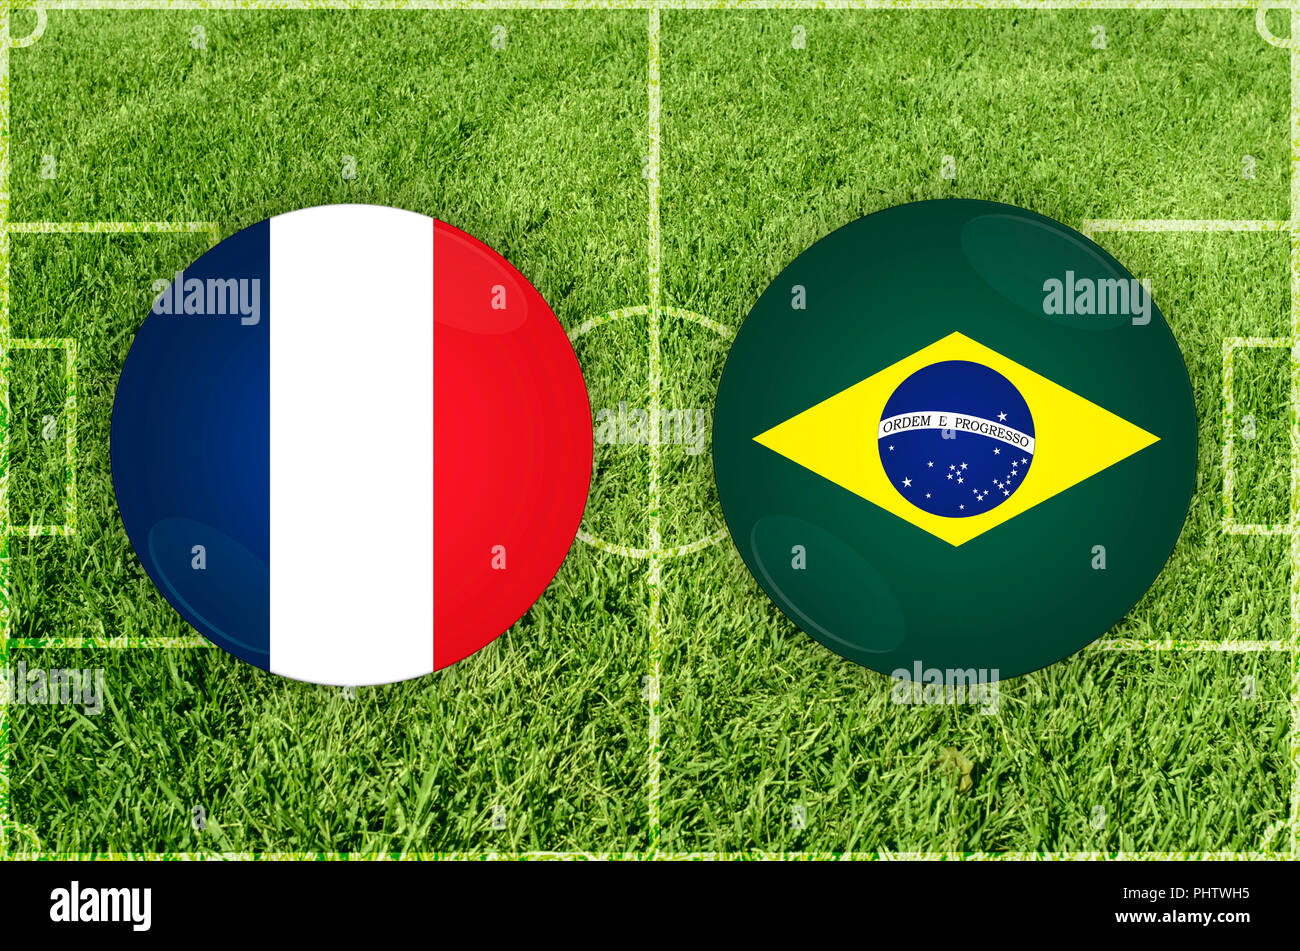 France vs Brazil football match Stock Photo Alamy